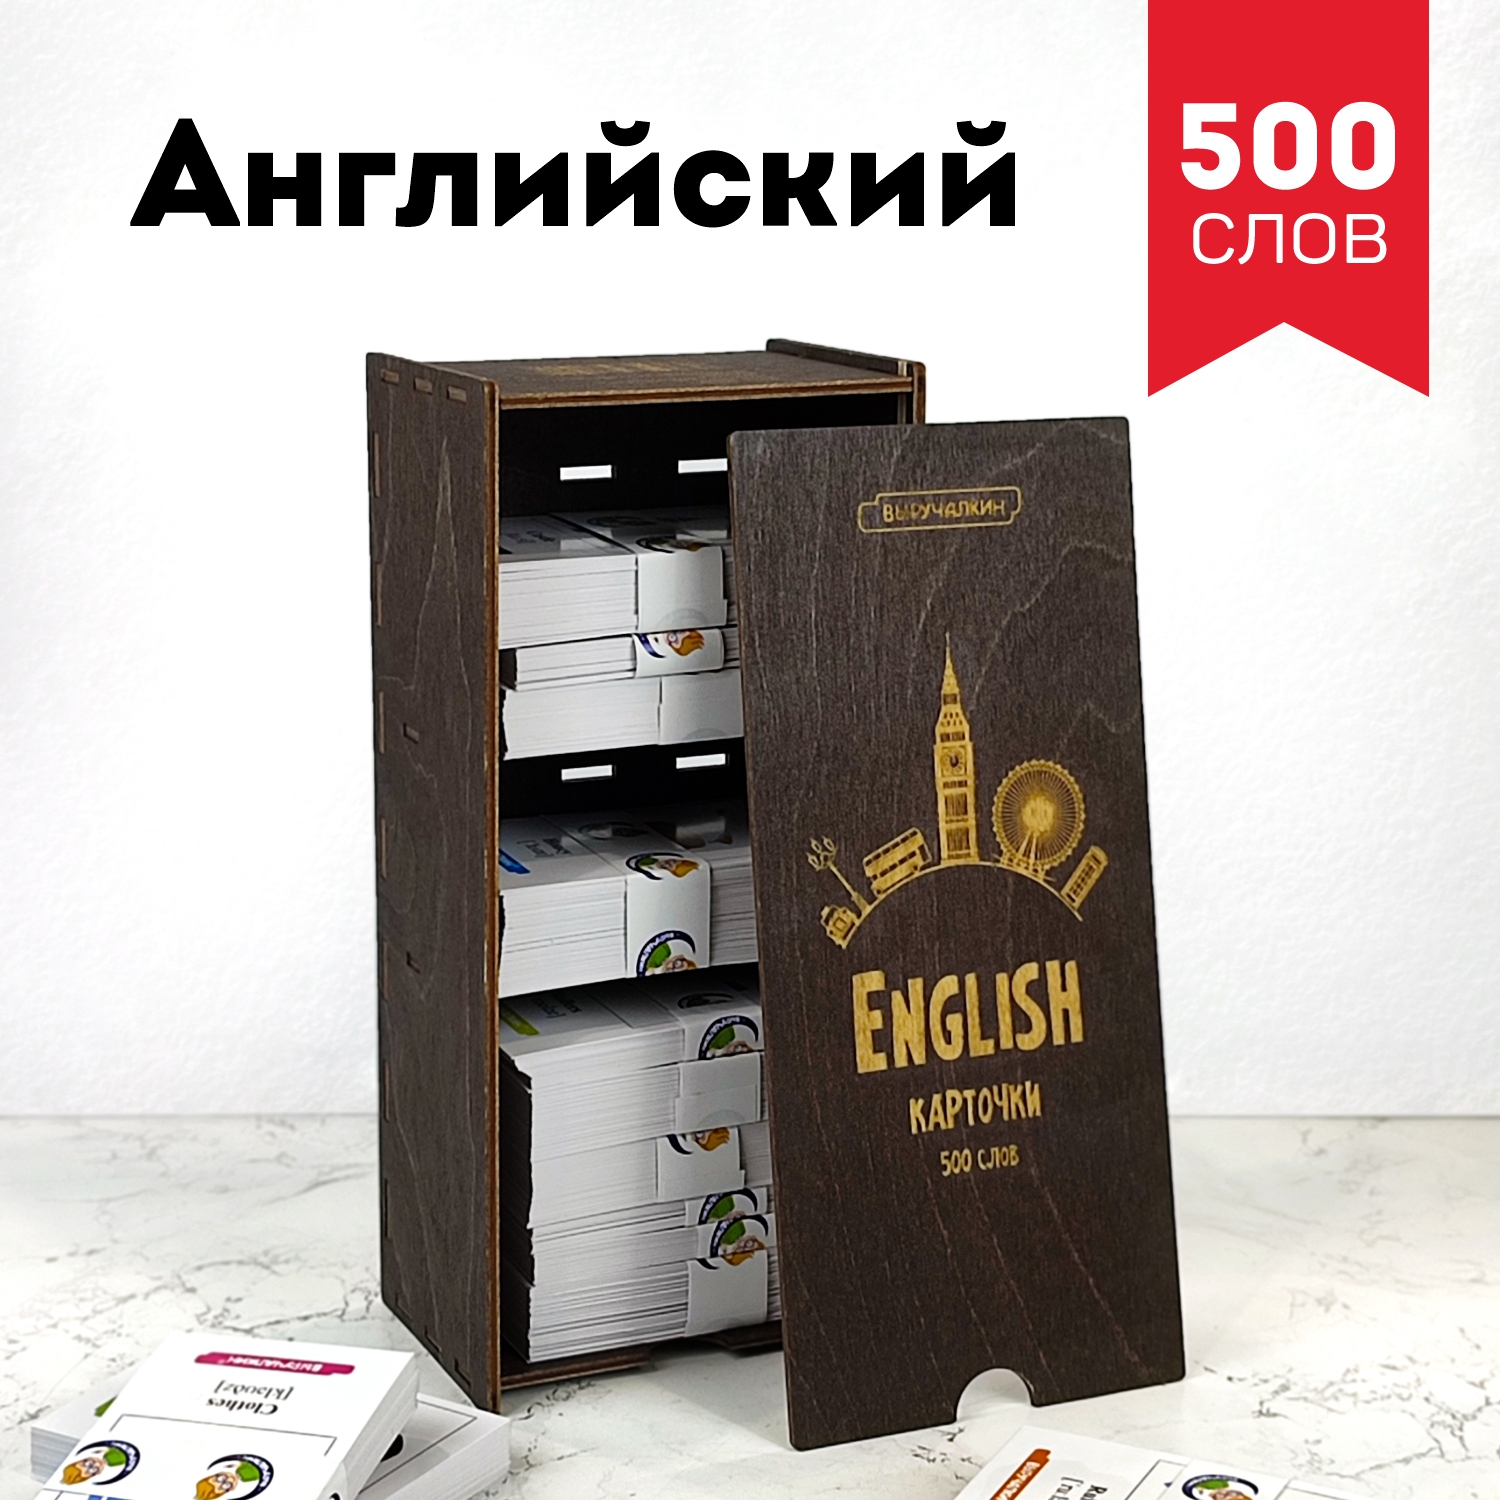 Обучающие карточки Выручалкин, Английский язык 500 слов английский алфавит 33 карточки с транскрипцией наобороте комплект упаковка